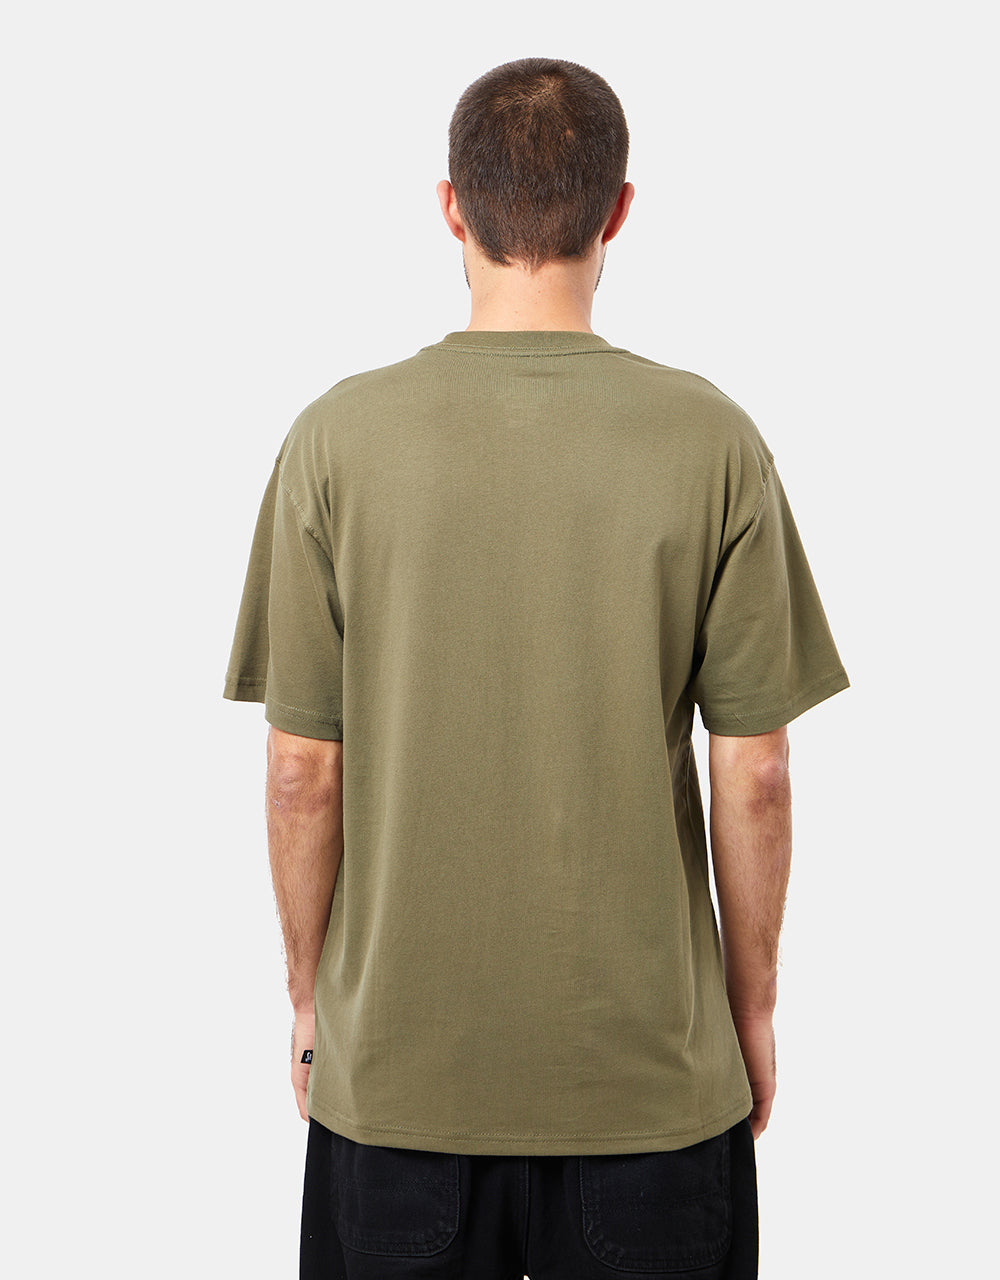 Nike SB Central Logo T-Shirt - Medium Olive